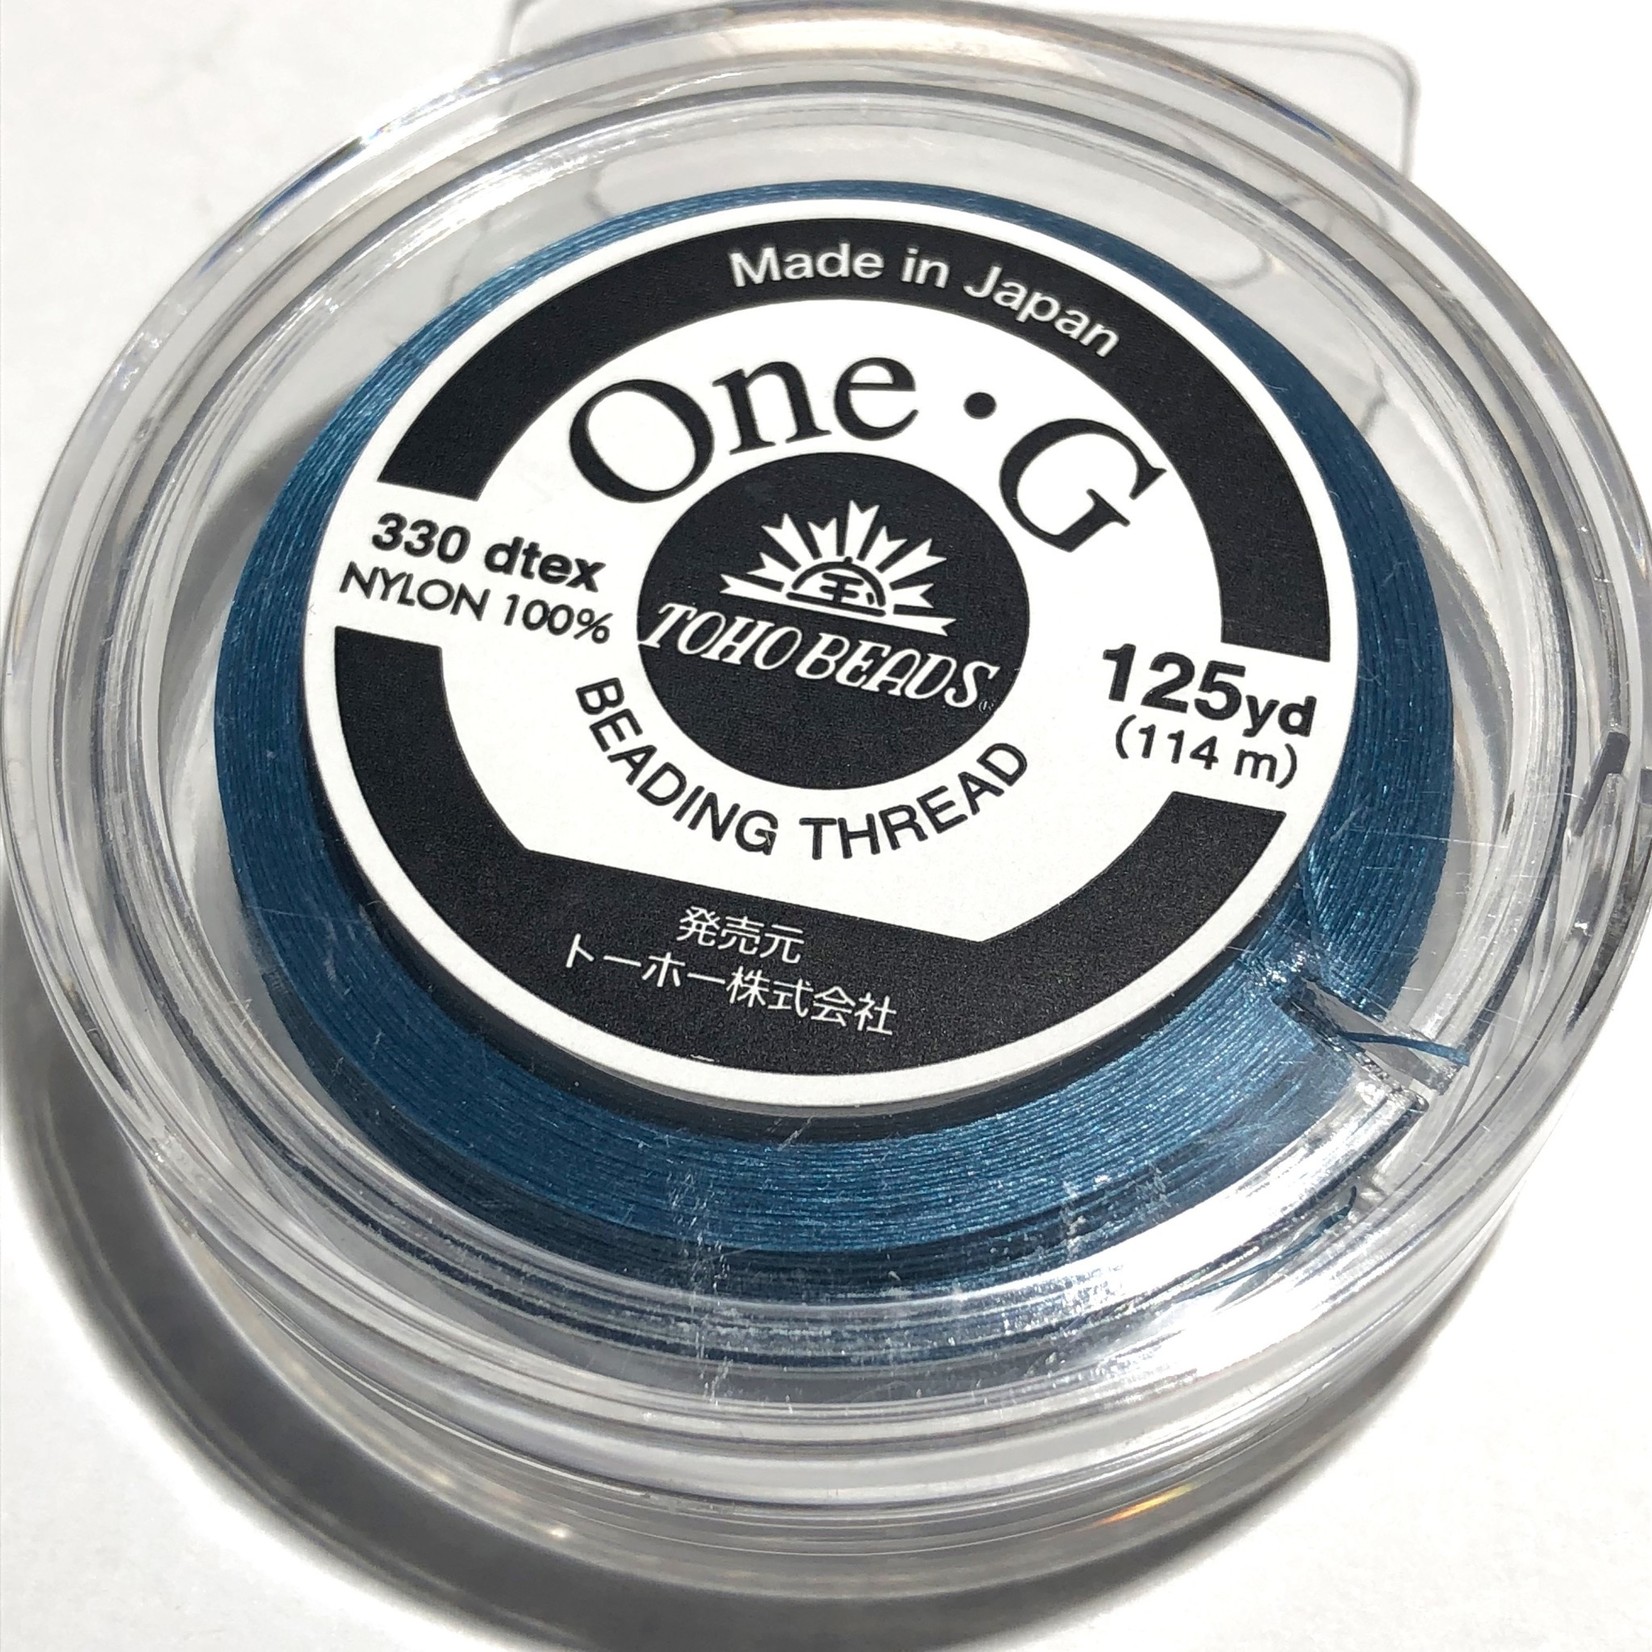 TOHO One-G Thread Blue 125 yd